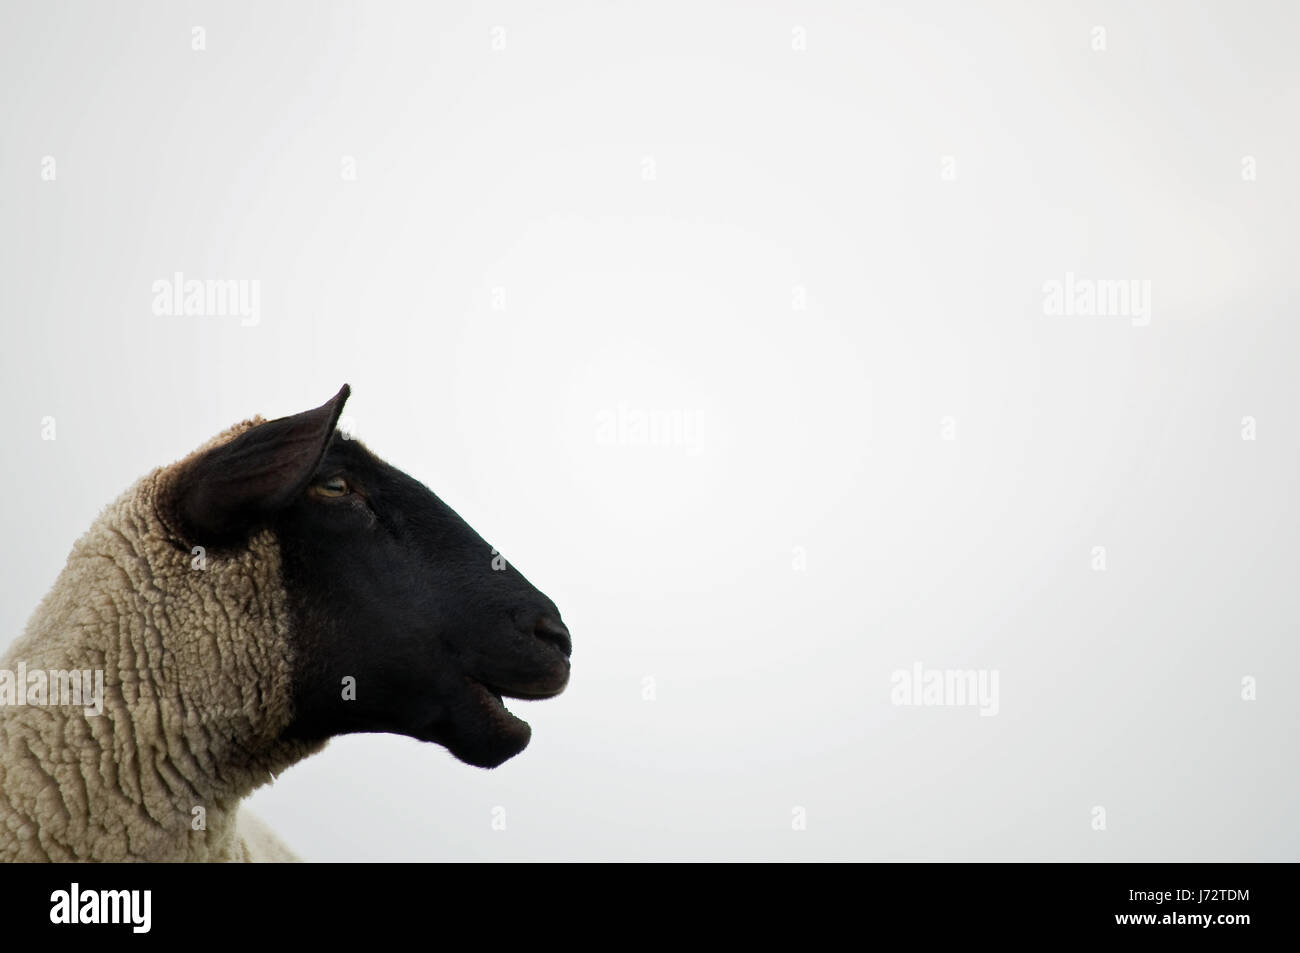 Schafe, Wolle, Bloekend, Schwarzkopfschaf, Exemplar, Freiflche, Freiflchen,  maeh Stockfotografie - Alamy